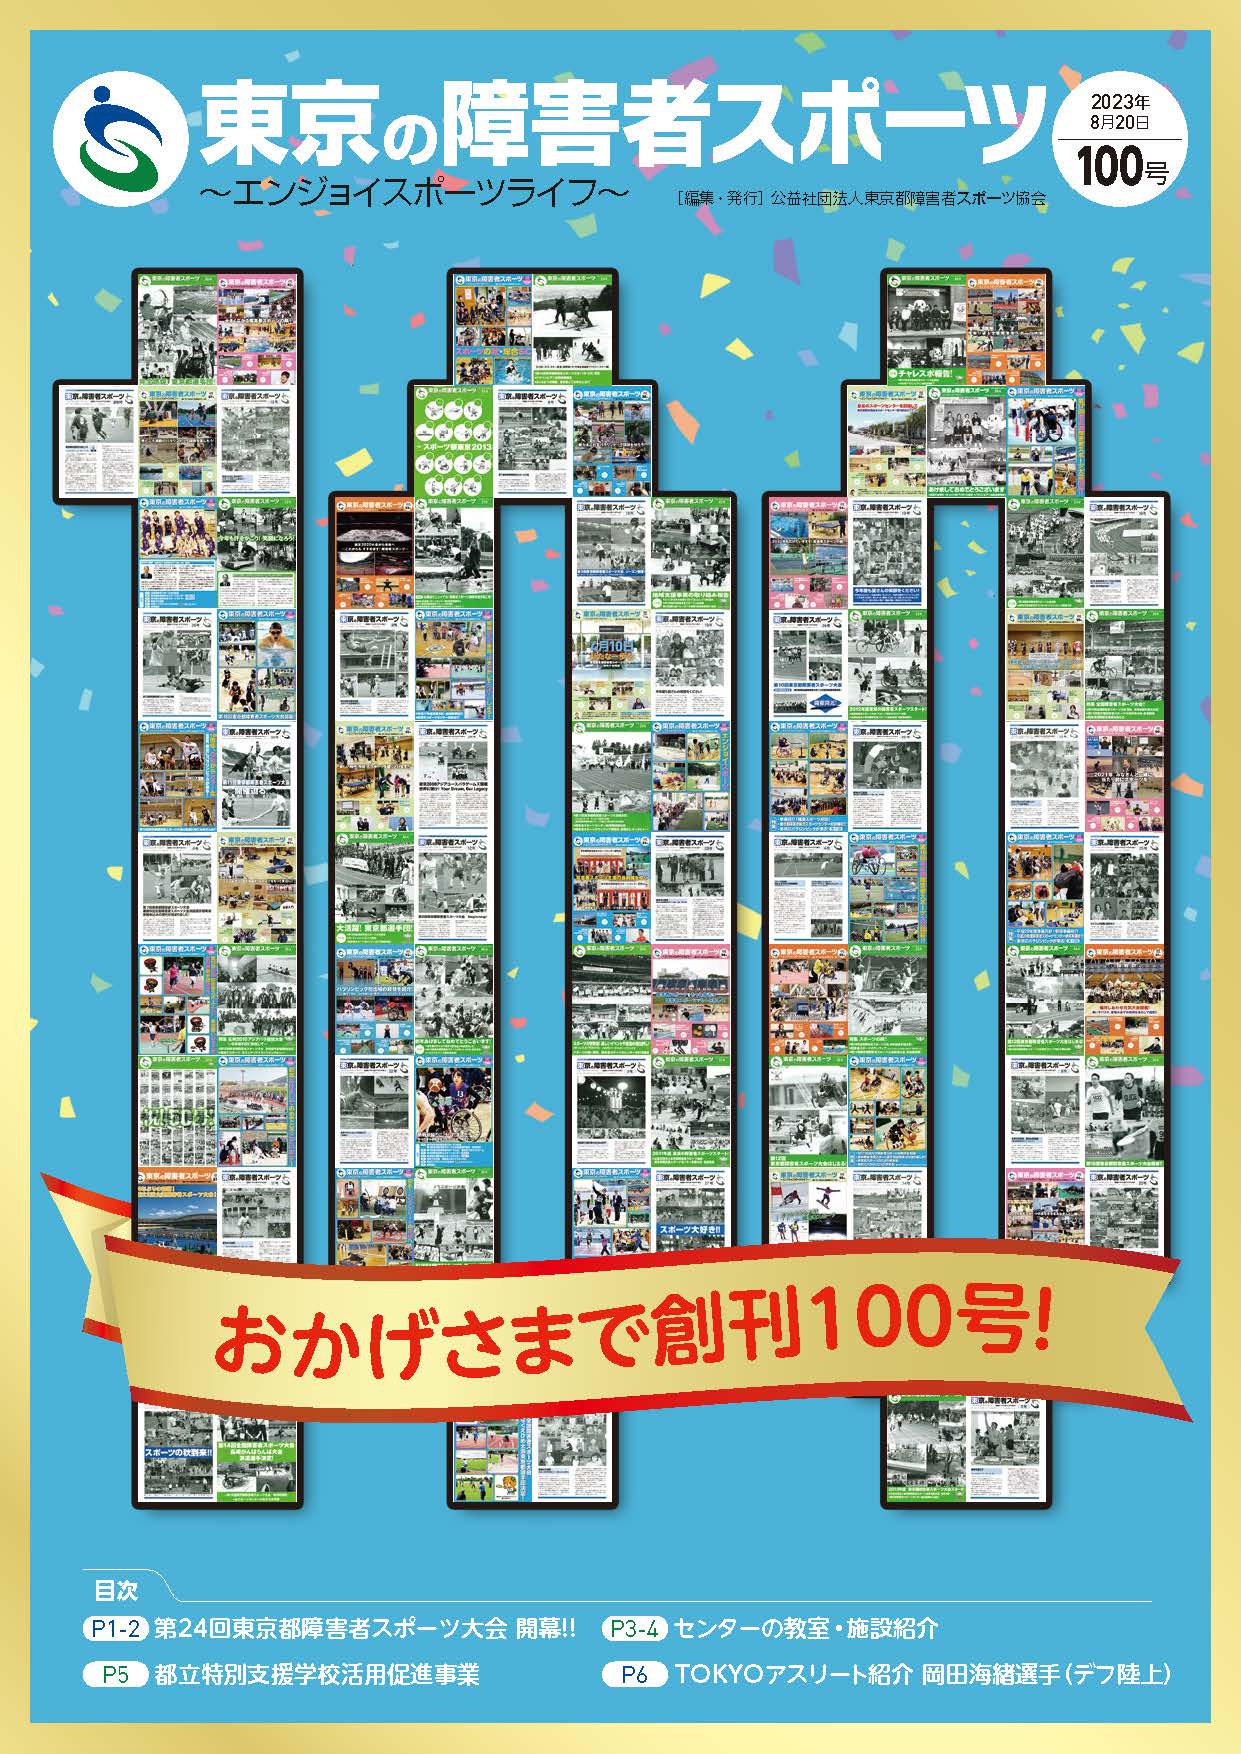 TSS100 CC2022 web0803 1 - 広報誌「東京の障害者スポーツ100号」を発行しました！